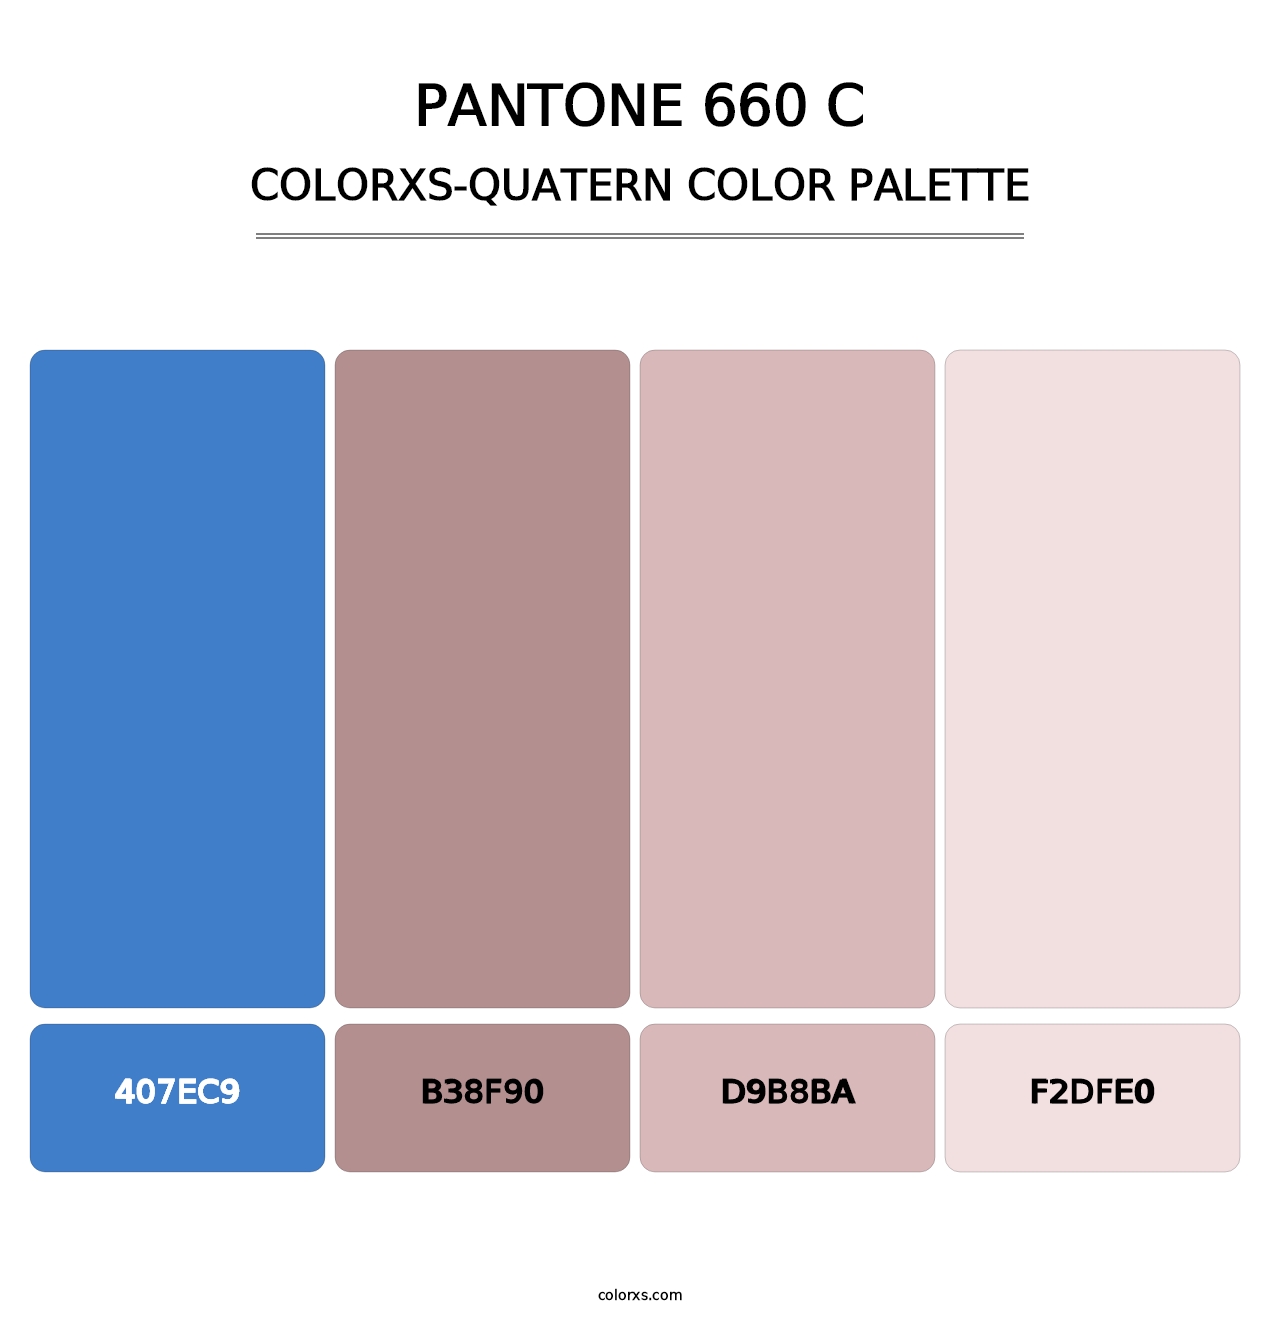 PANTONE 660 C - Colorxs Quatern Palette